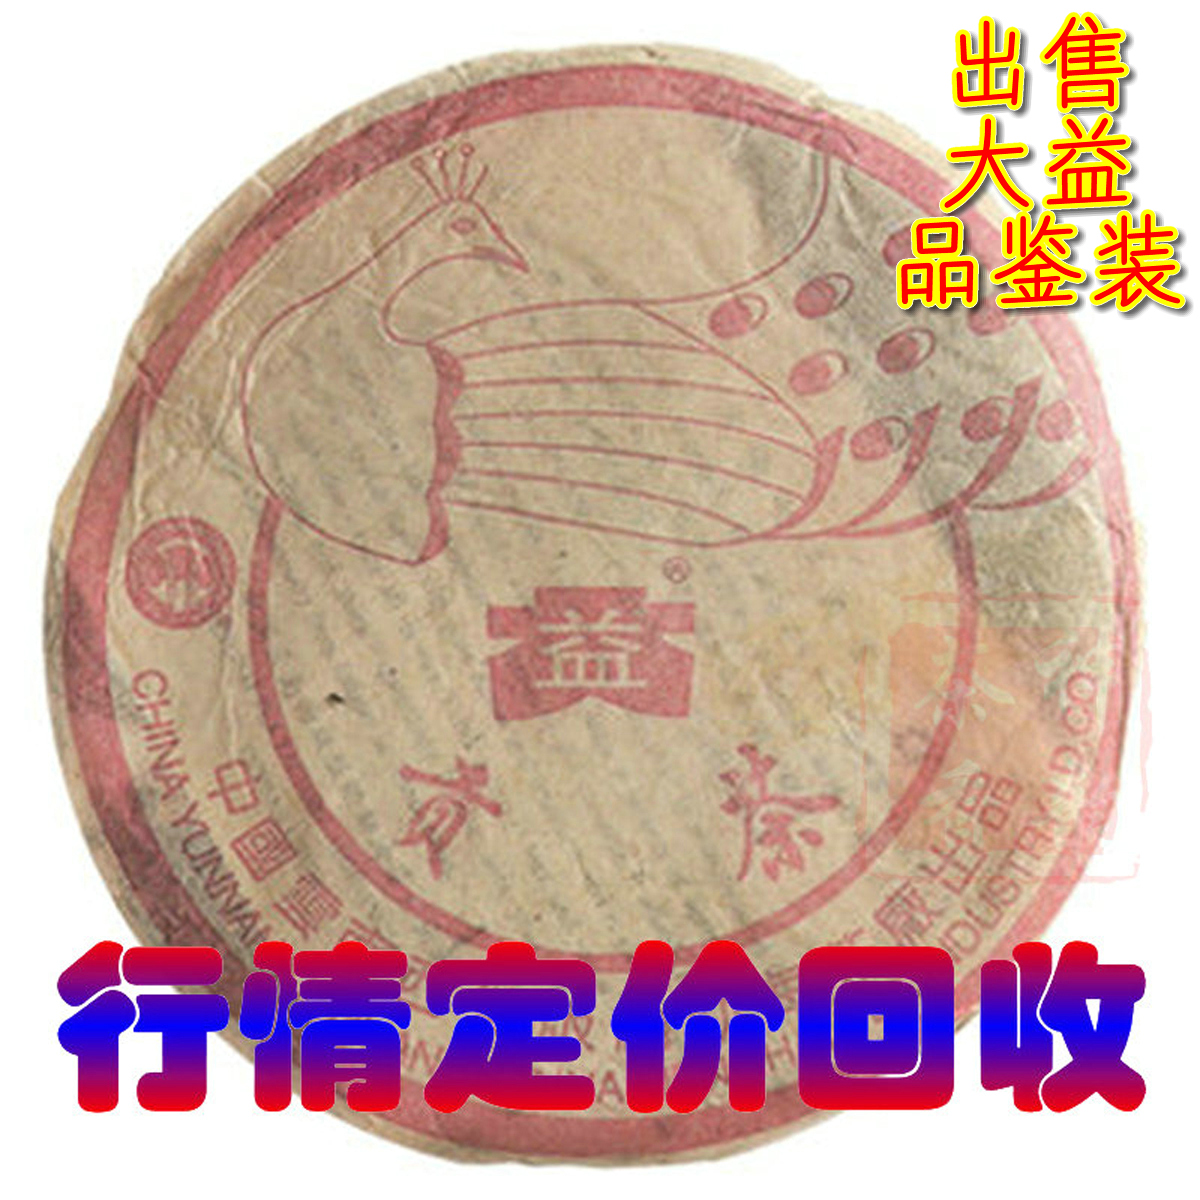 行情定价回收大益普洱茶2003年 孔雀贡饼 粉红色 200克 熟茶